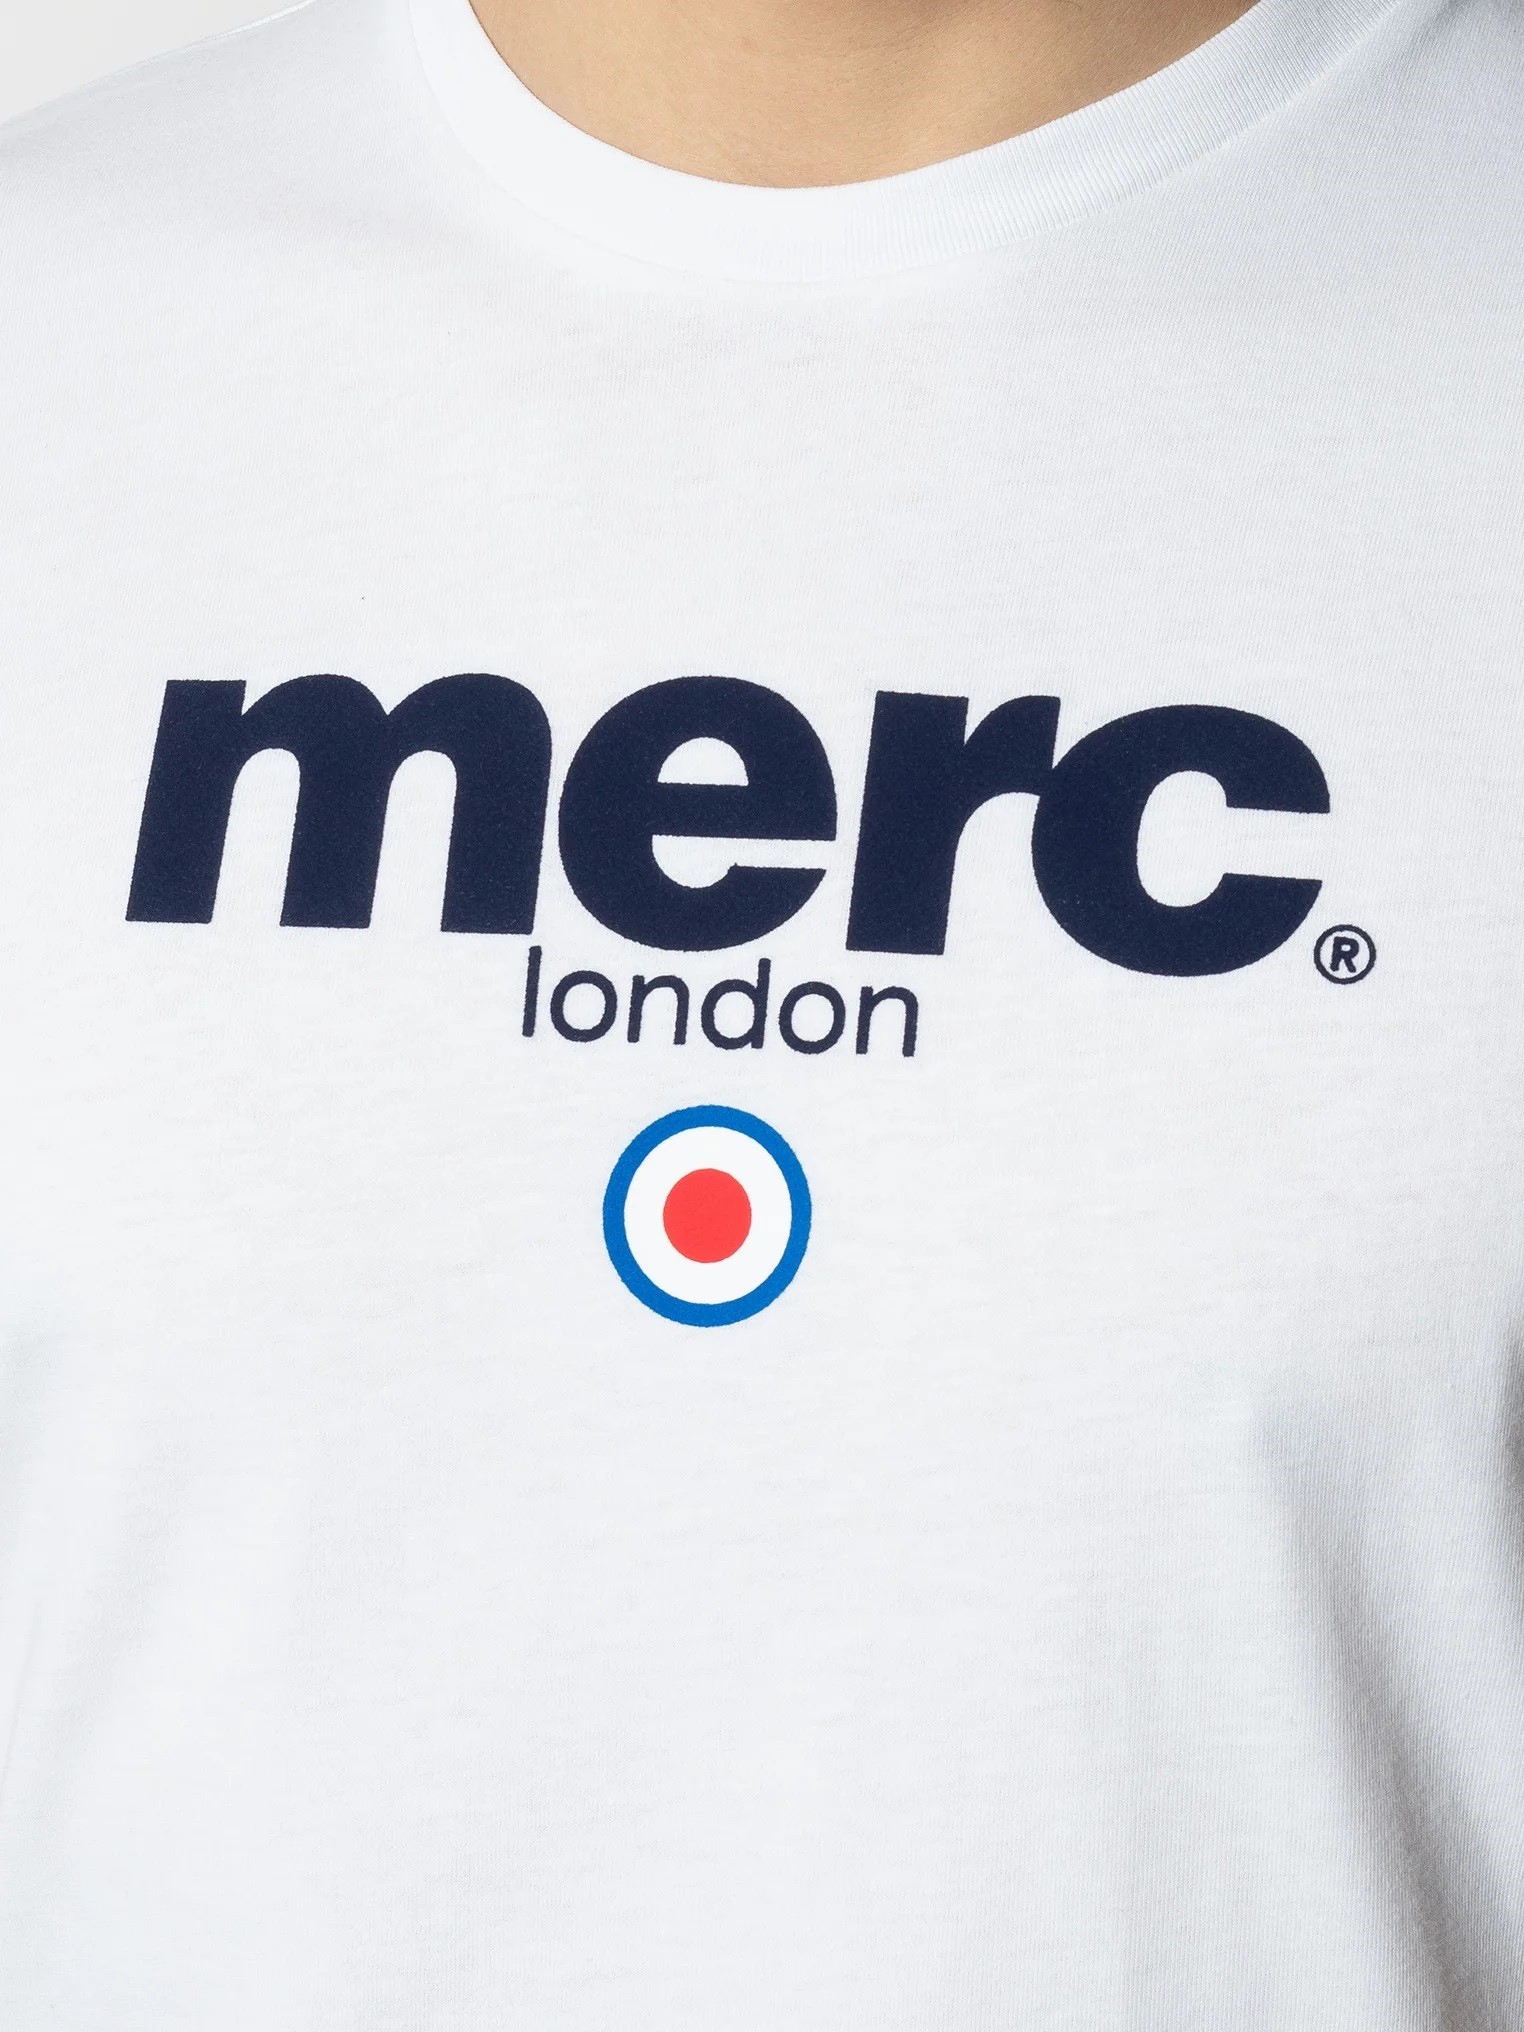 Мужская футболка с классическим логотипом Merc Brighton, white (белая), купить на официальном сайте